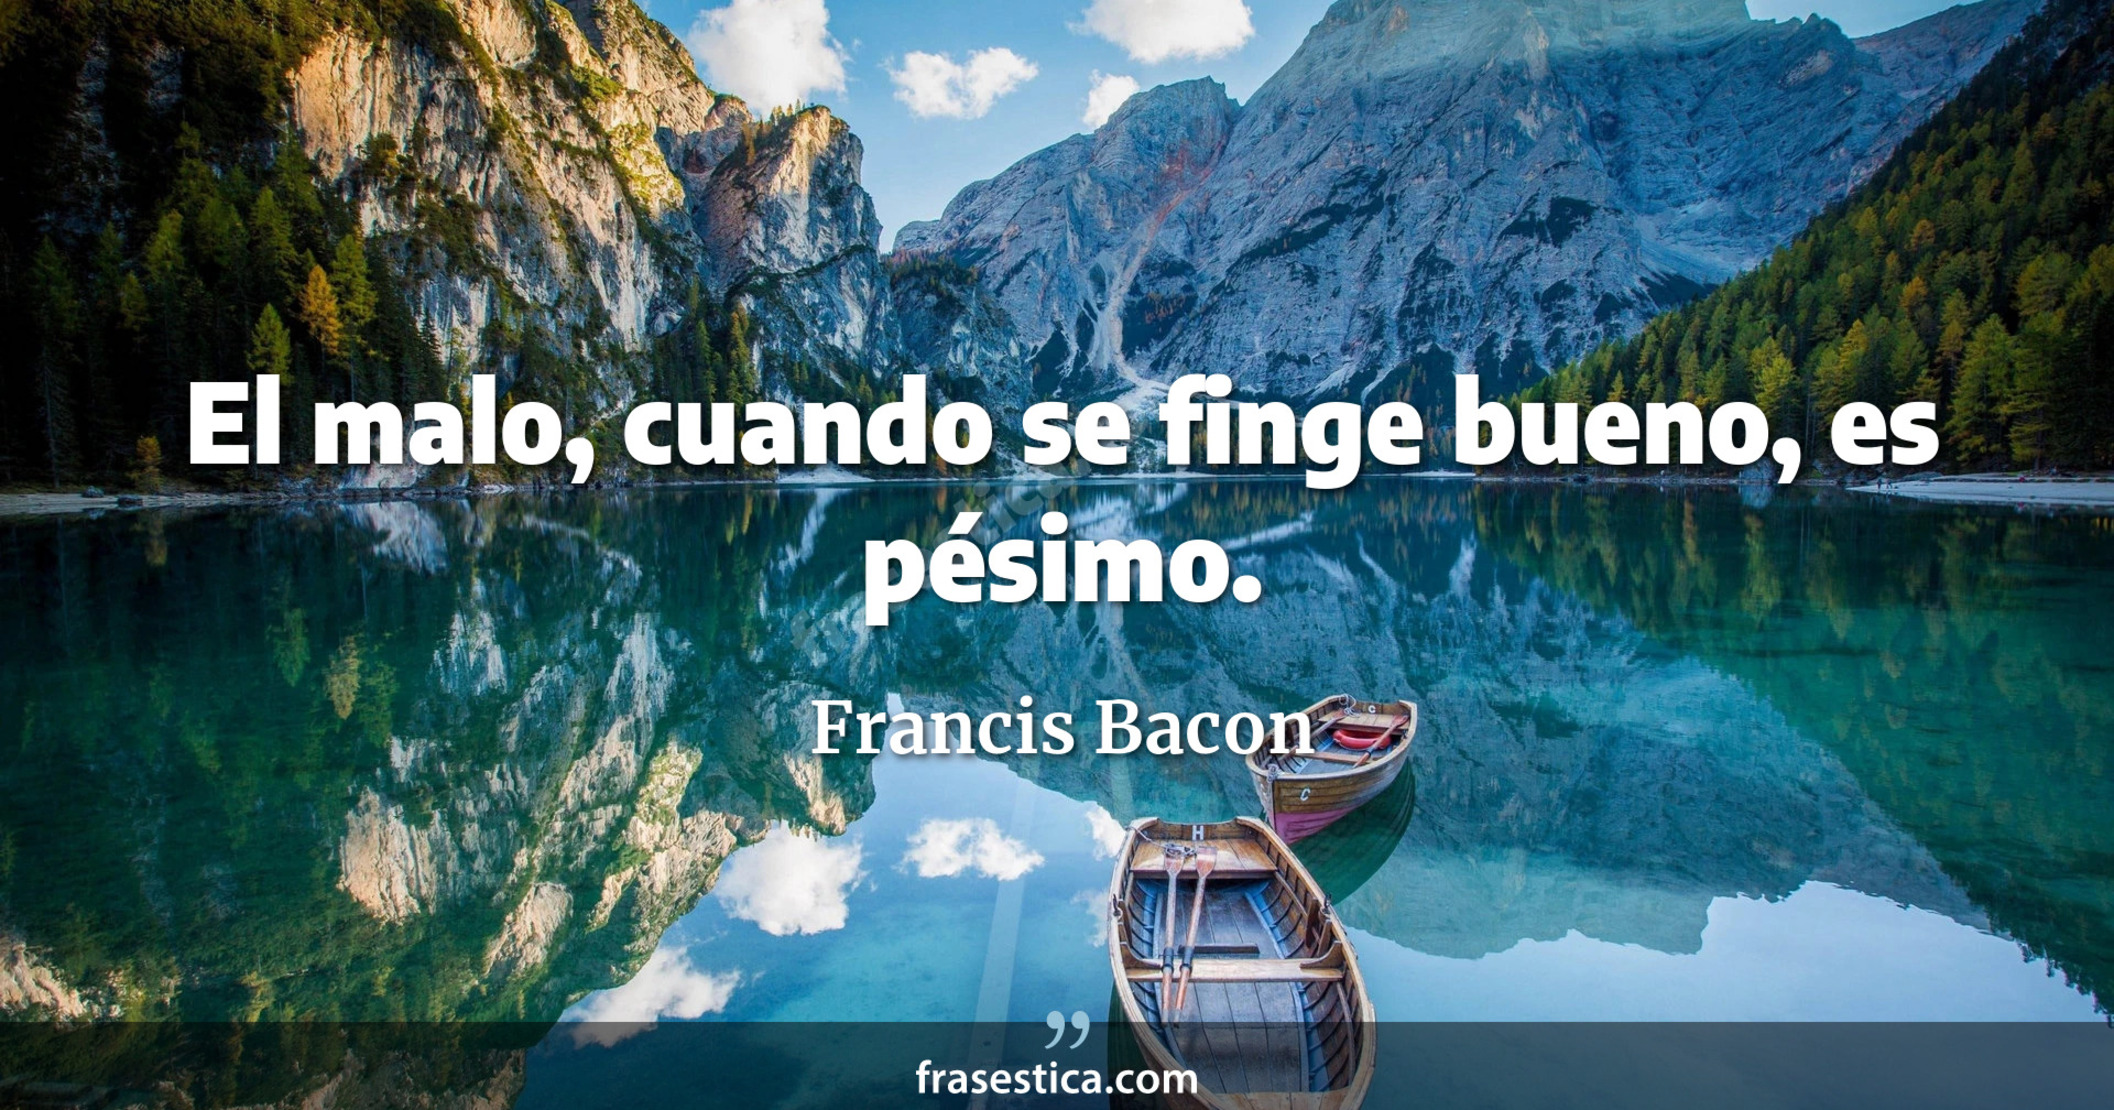 El malo, cuando se finge bueno, es pésimo. - Francis Bacon